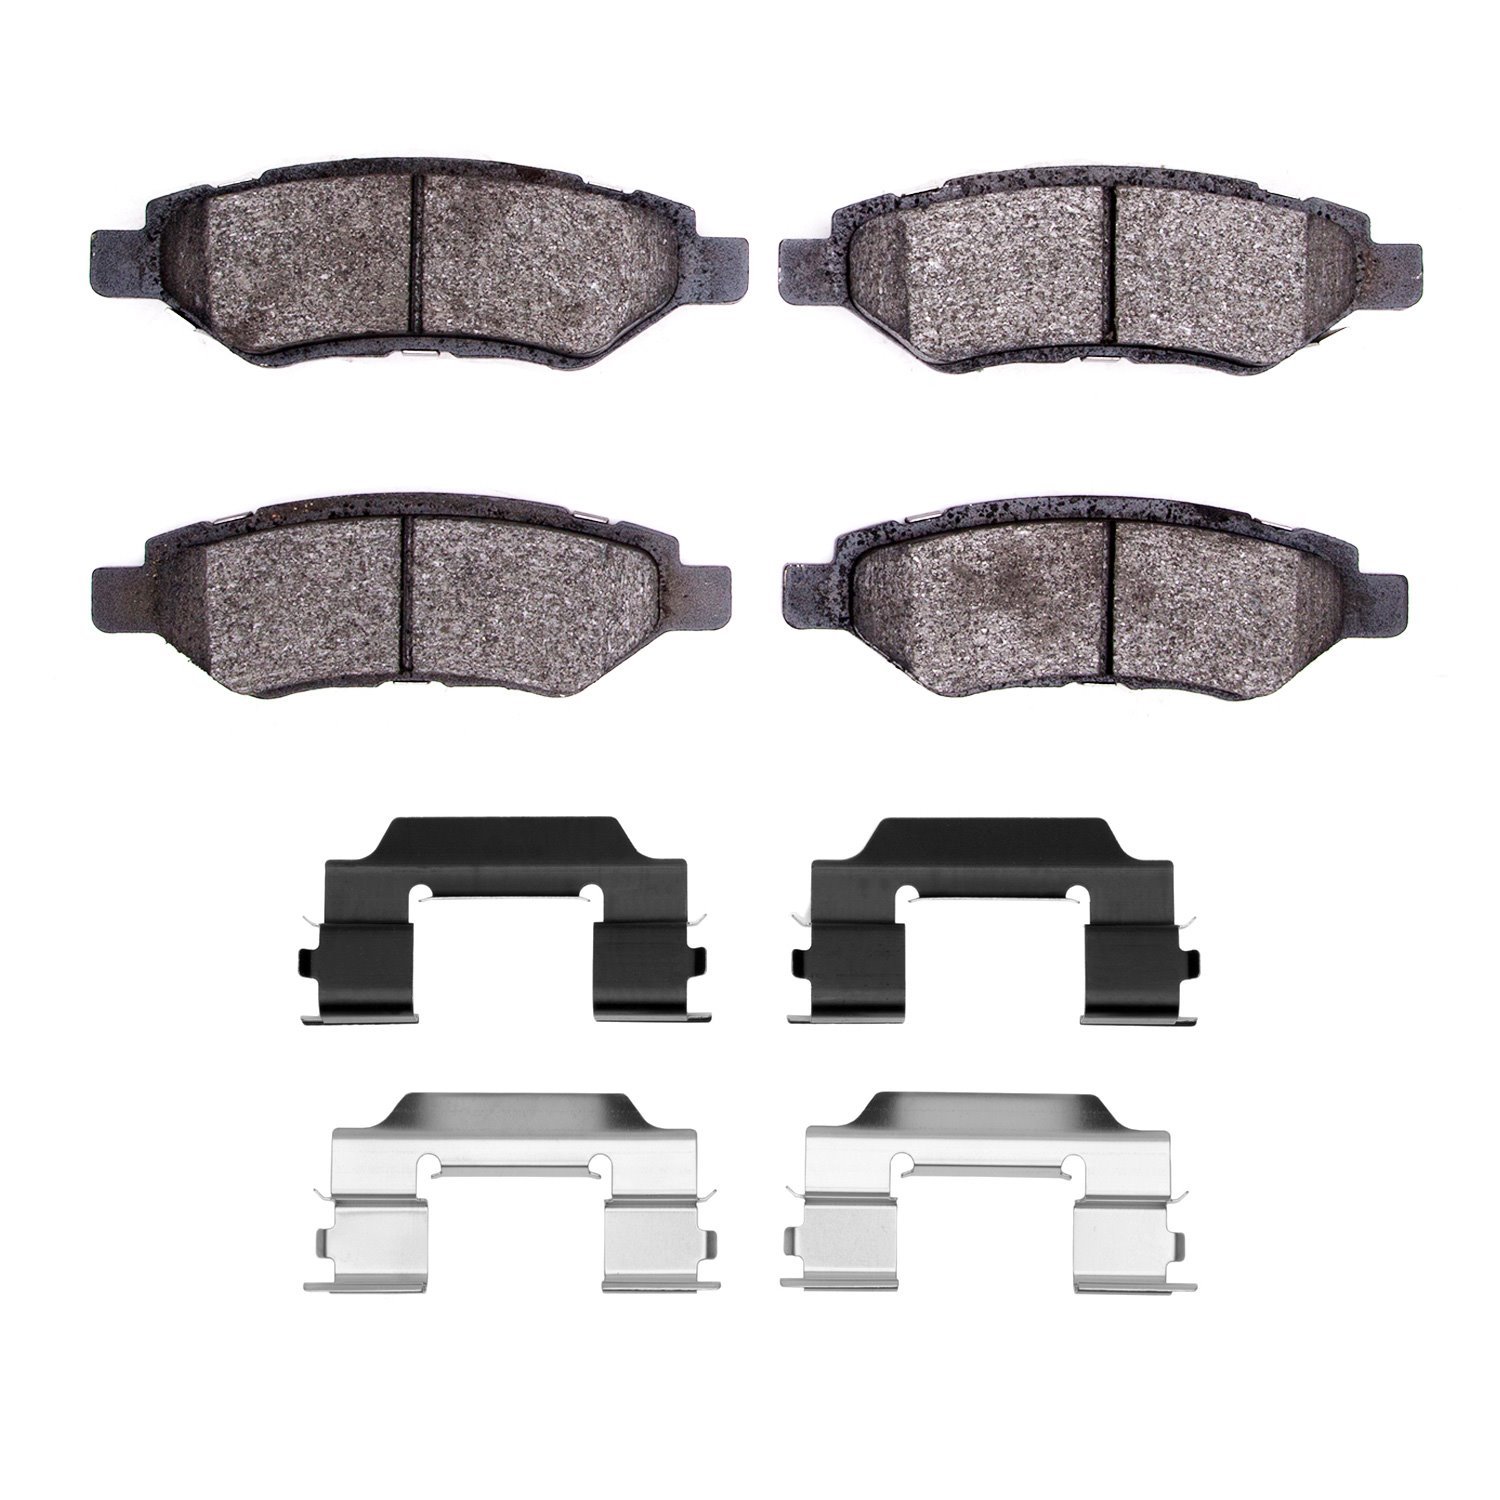 1310-1337-01 3000-Series Ceramic Brake Pads & Hardware Kit, 2008-2016 GM, Position: Rear